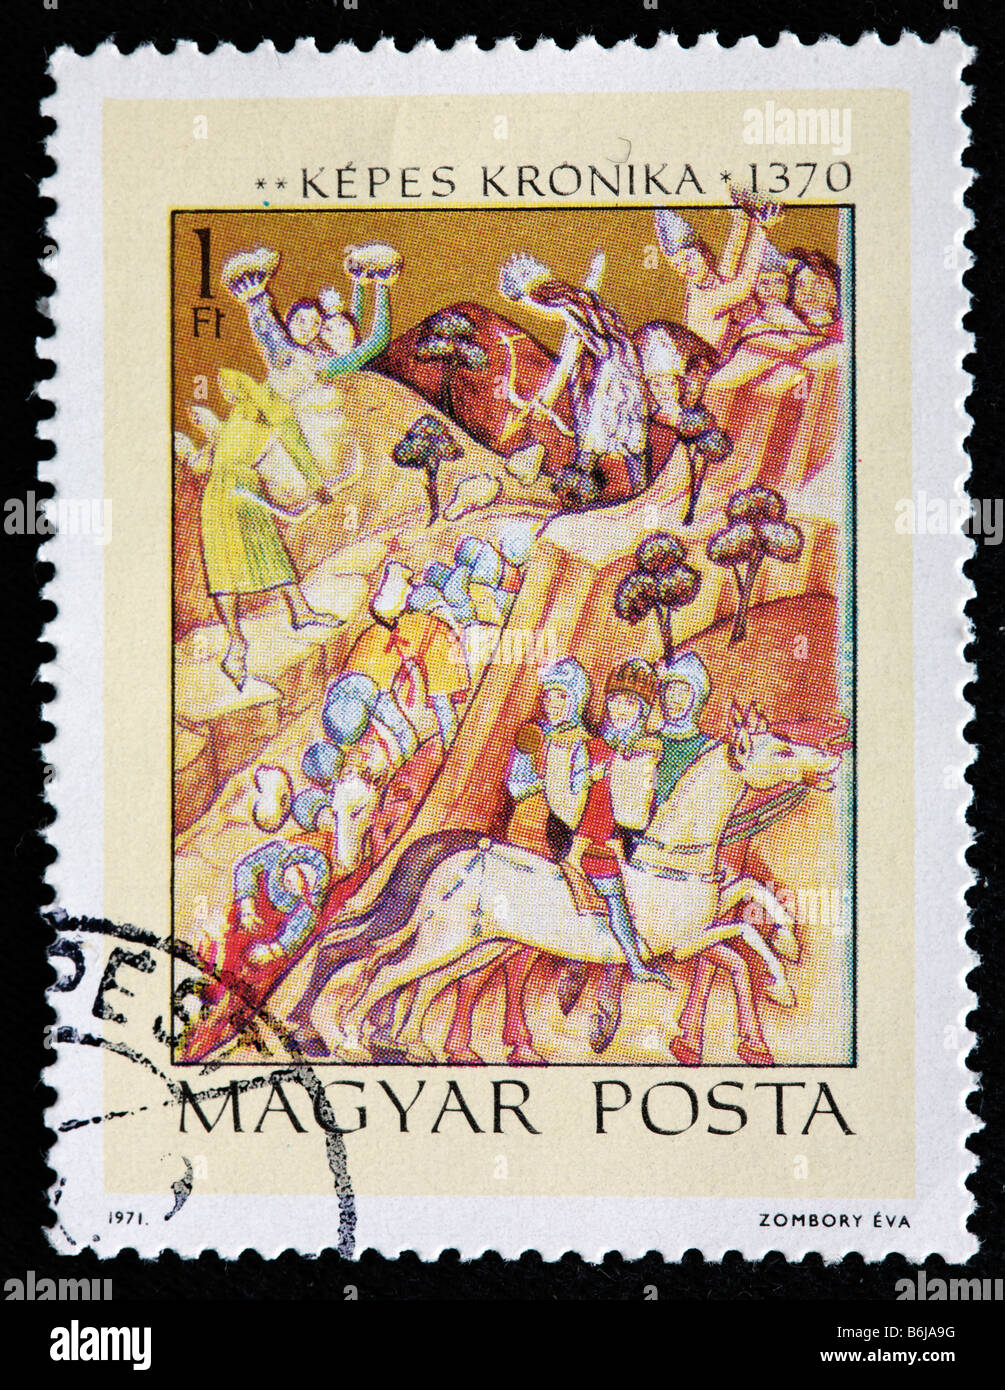 Kepes kronika (Vienne, Chronica Picta chronique illuminé, Chronica de gestis Hungarorum) (1370), timbre-poste, Hongrie, 1971 Banque D'Images